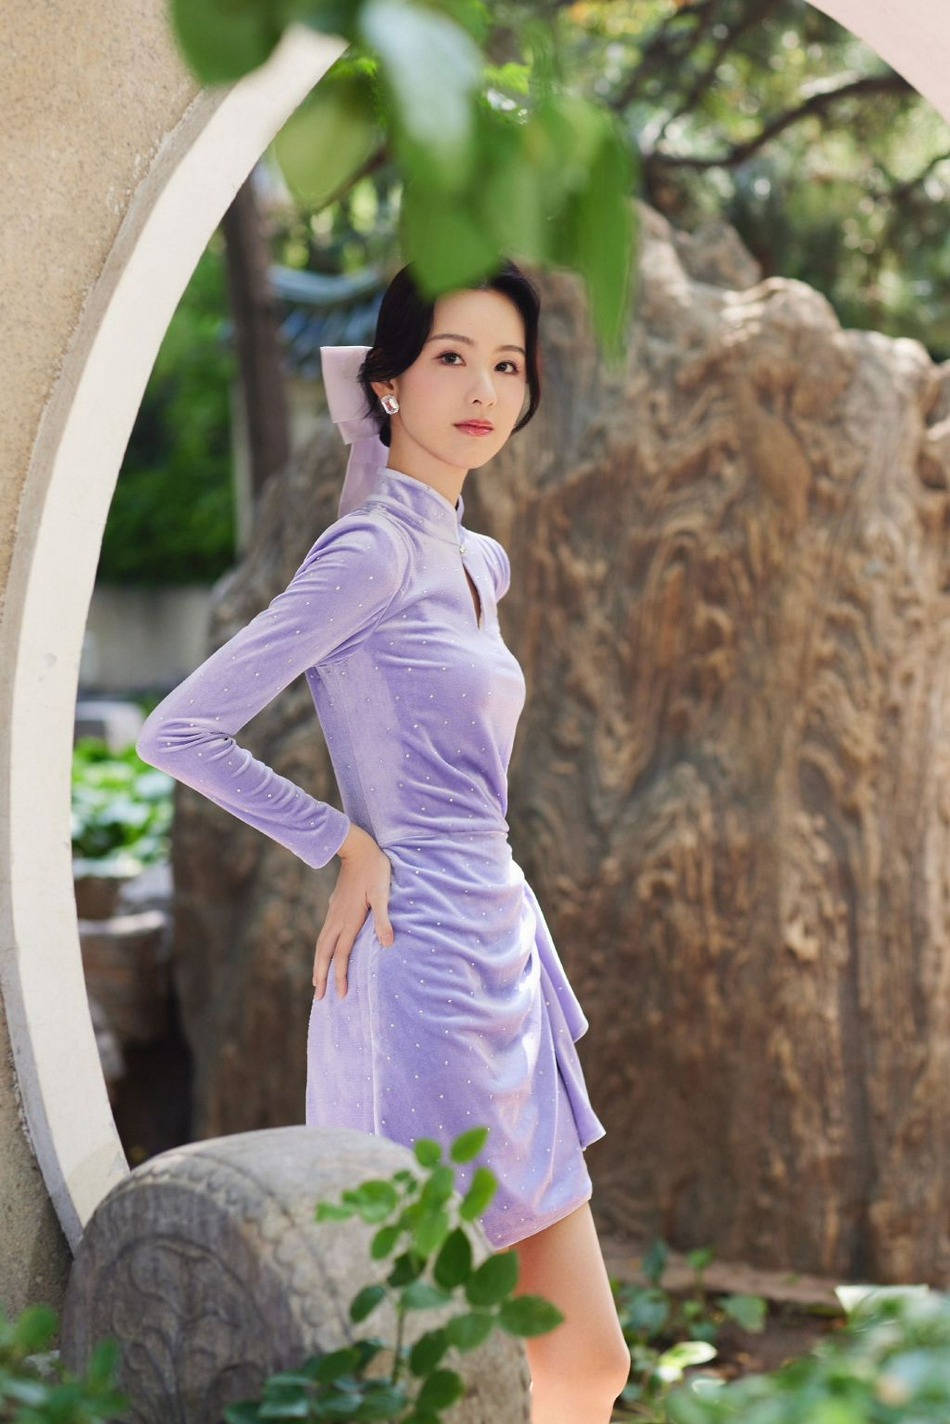 陈都灵紫色丝绒短裙大秀身材写真  第2张